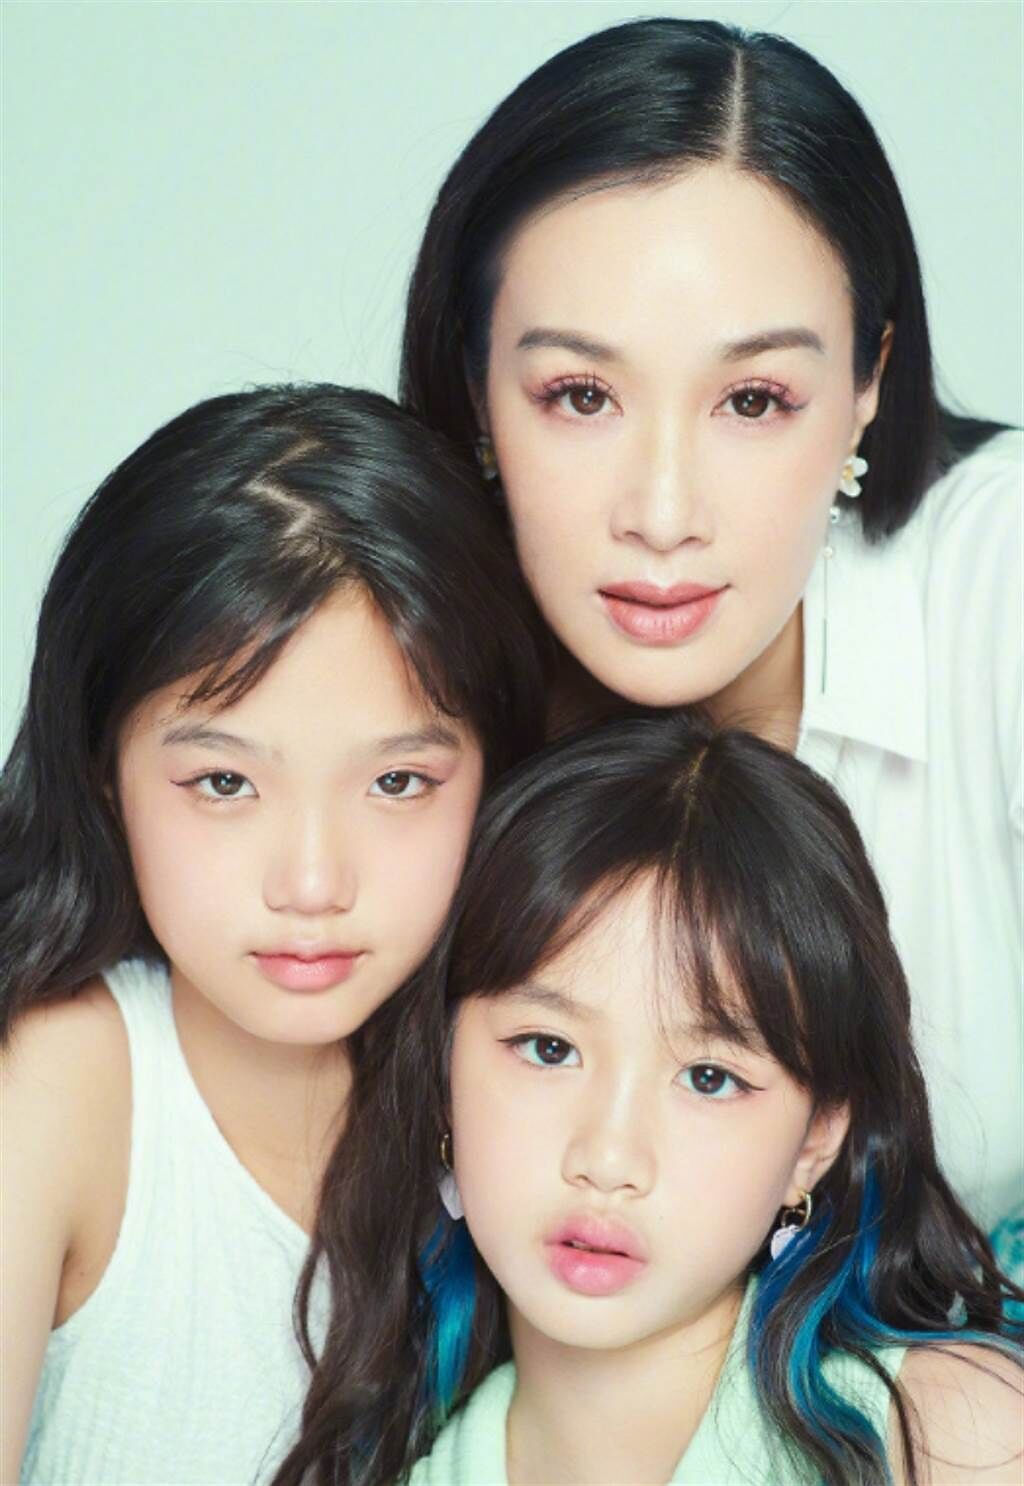 鍾麗緹在微博曬出和二女兒、小女兒的母女合照，女兒們長大顏值也升級。(圖/ 摘自鍾麗緹微博)